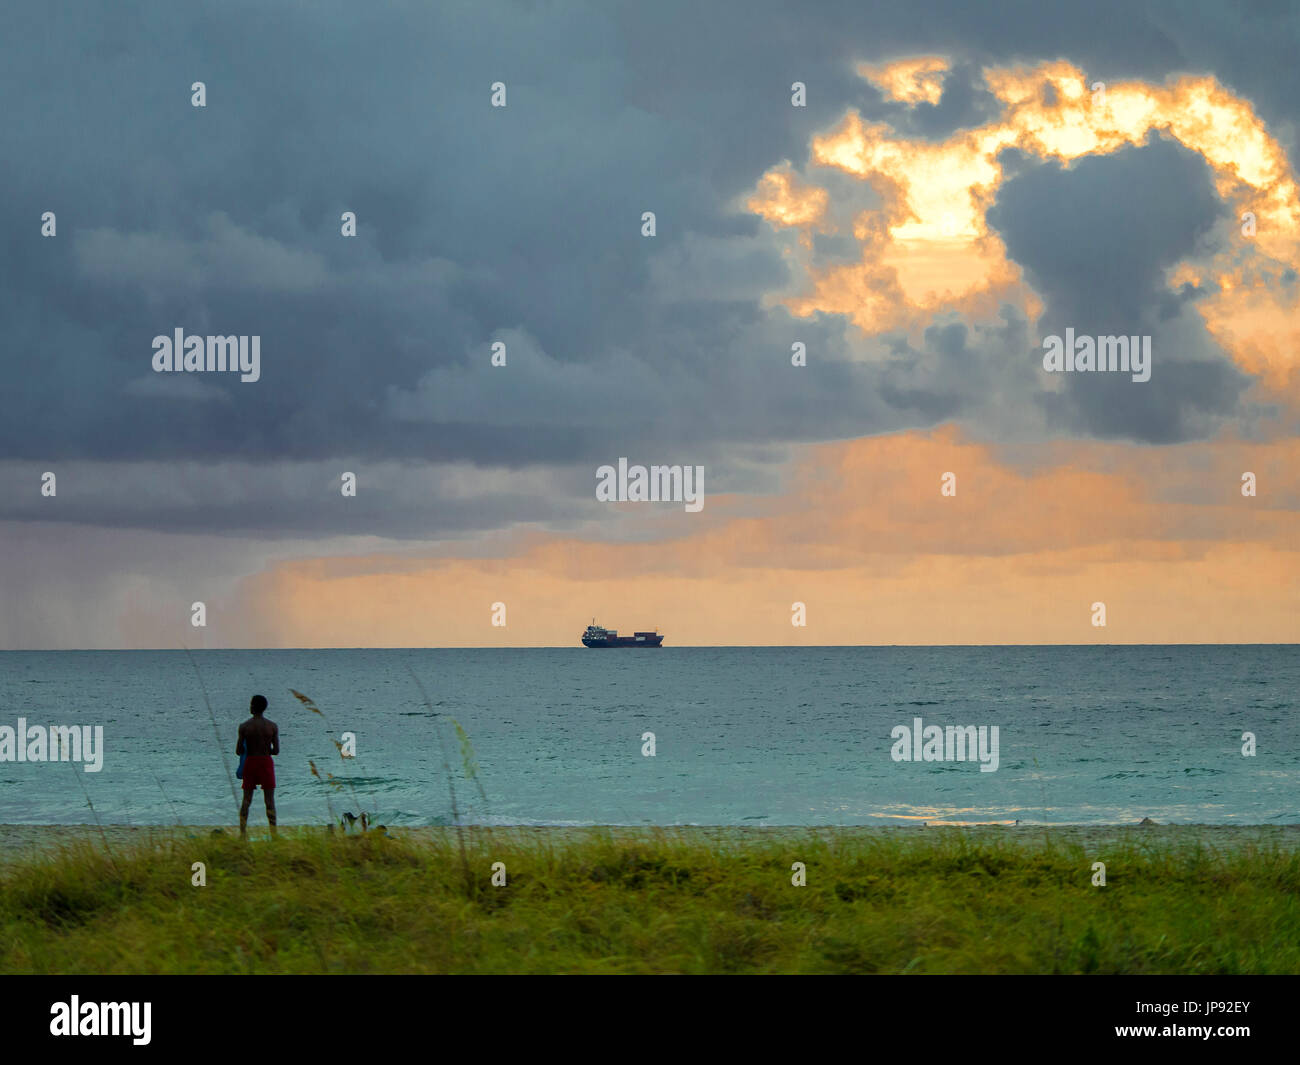 Lever du soleil de Miami Beach, Floride, USA Banque D'Images